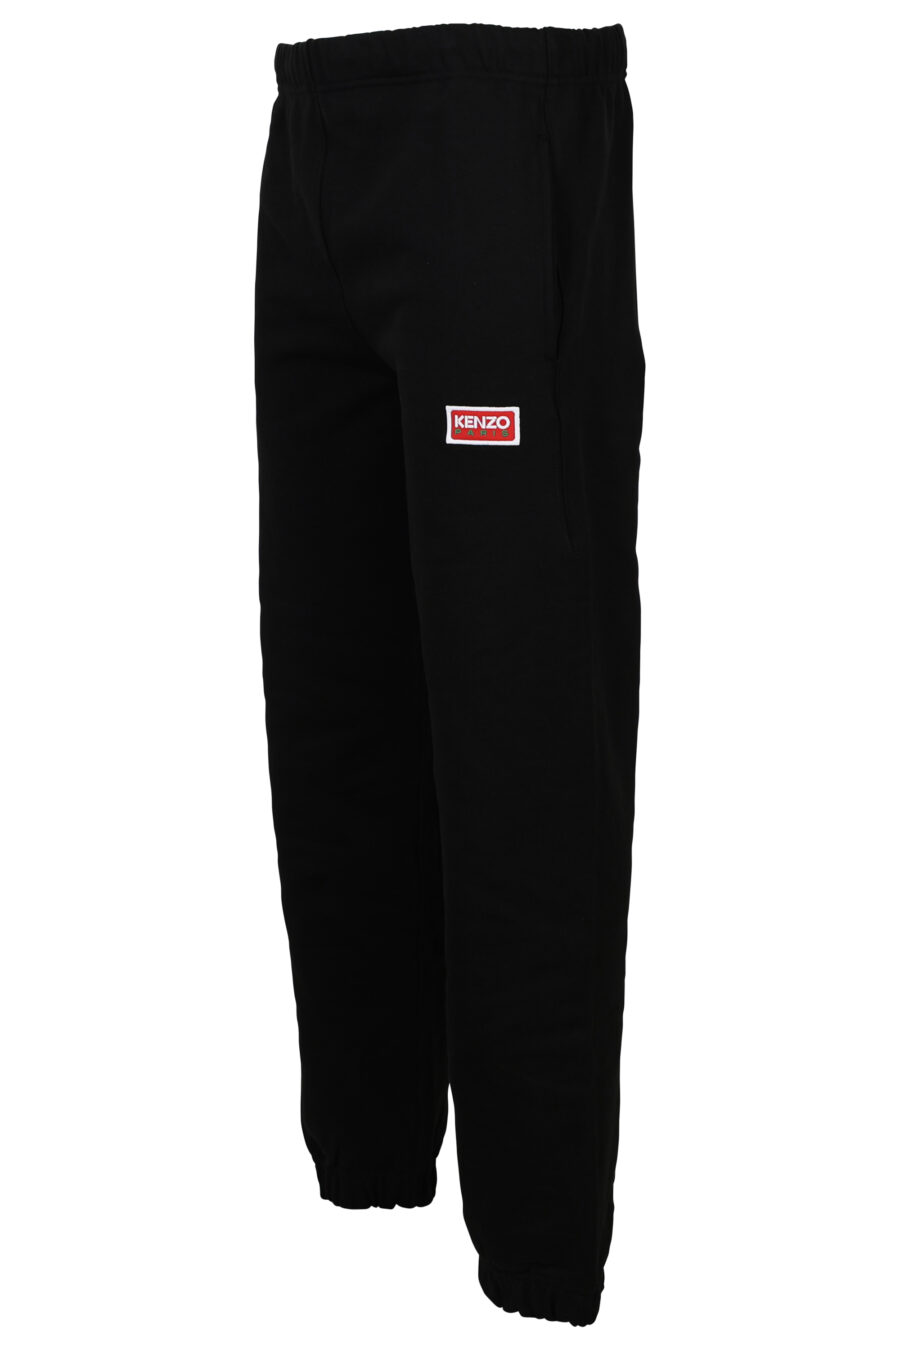 Pantalón de chándal negro con logo pequeño "kenzo paris" - 3612230535985 1